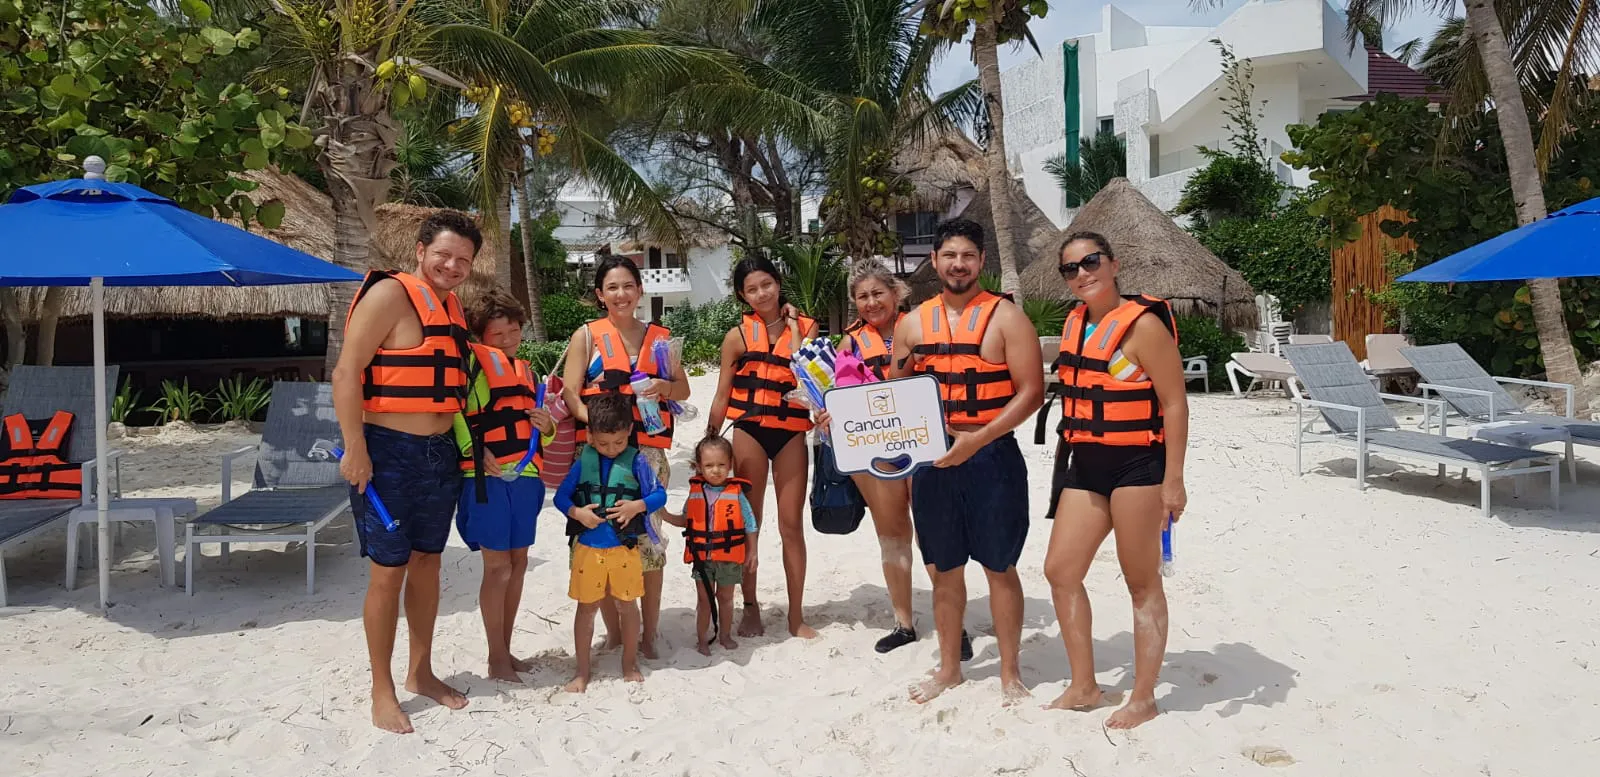 Una familia de seis adultos y tres niños parados enfrente de sillas de playa | Cancun Snorkeling